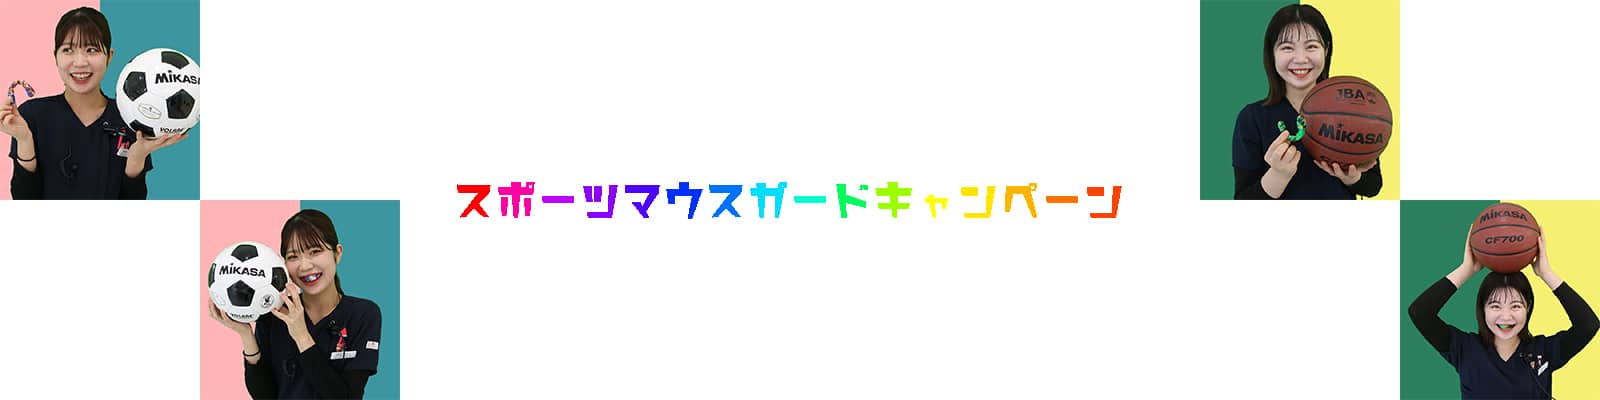 御笠川デンタルクリニック ヒカリのいい歯の日キャンペーン